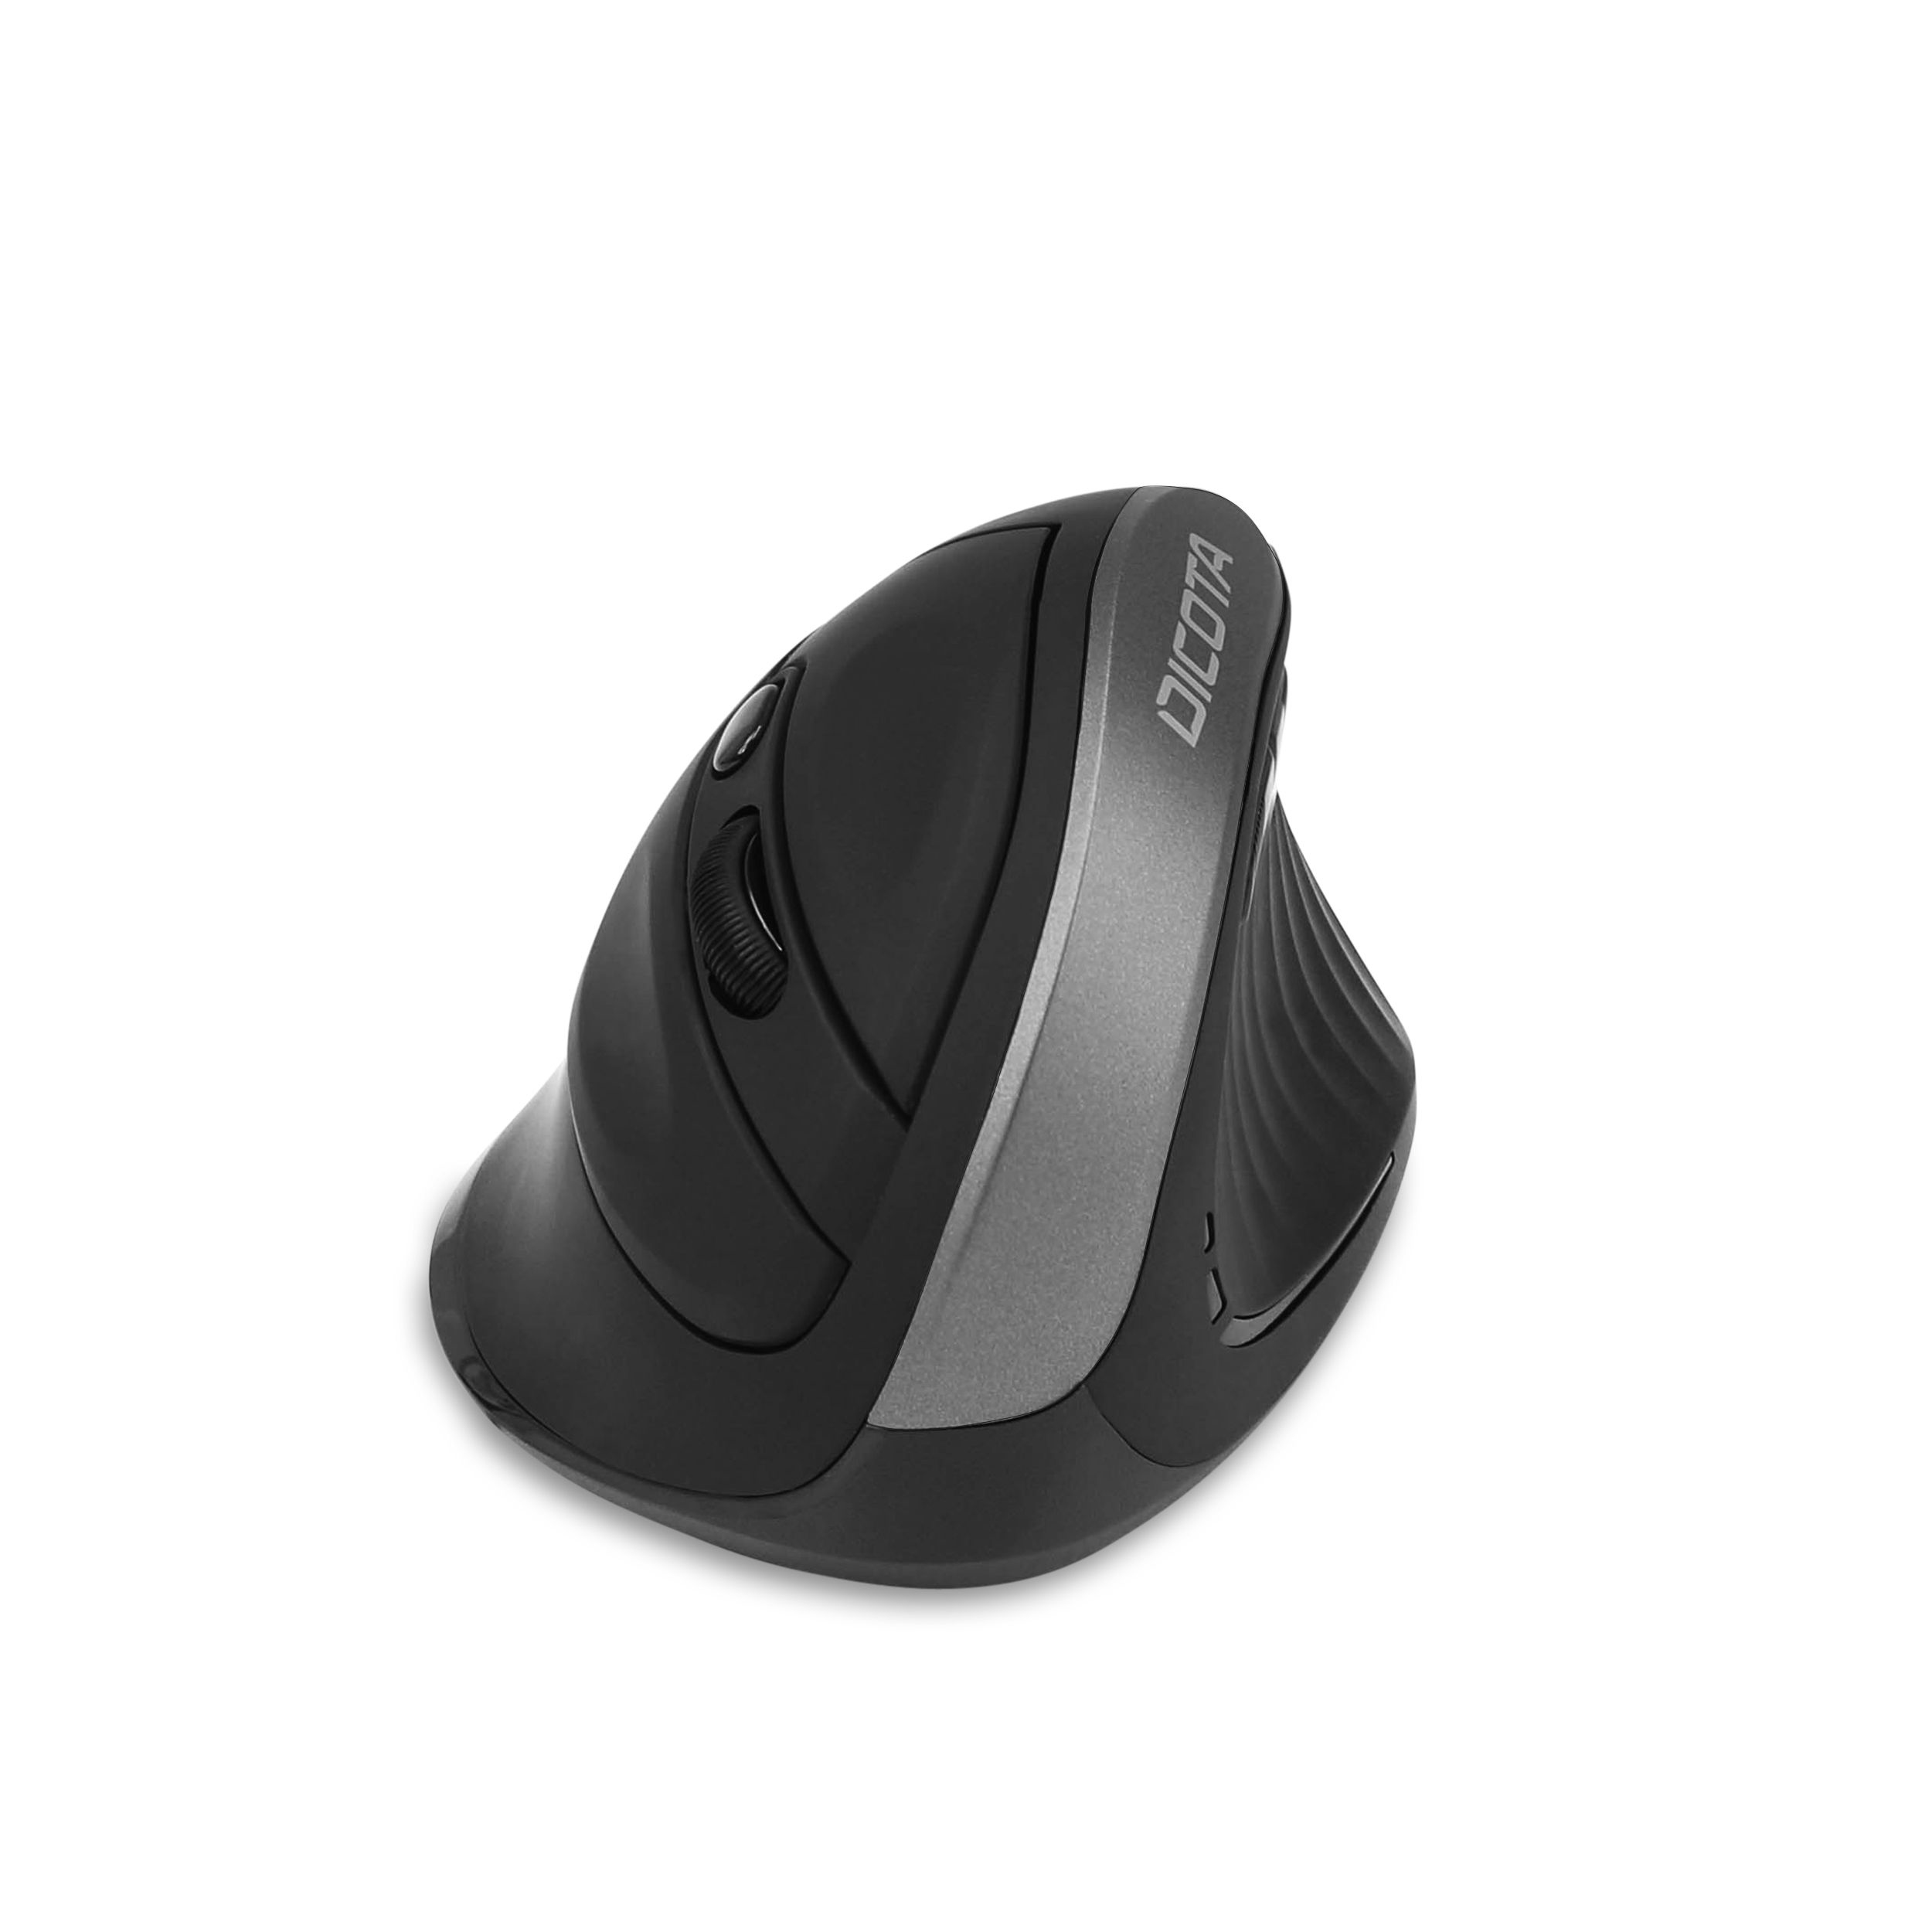 Dicota Relax - Maus - ergonomisch - Für Rechtshänder - 5 Tasten - kabellos - kabelloser Empfänger (USB)